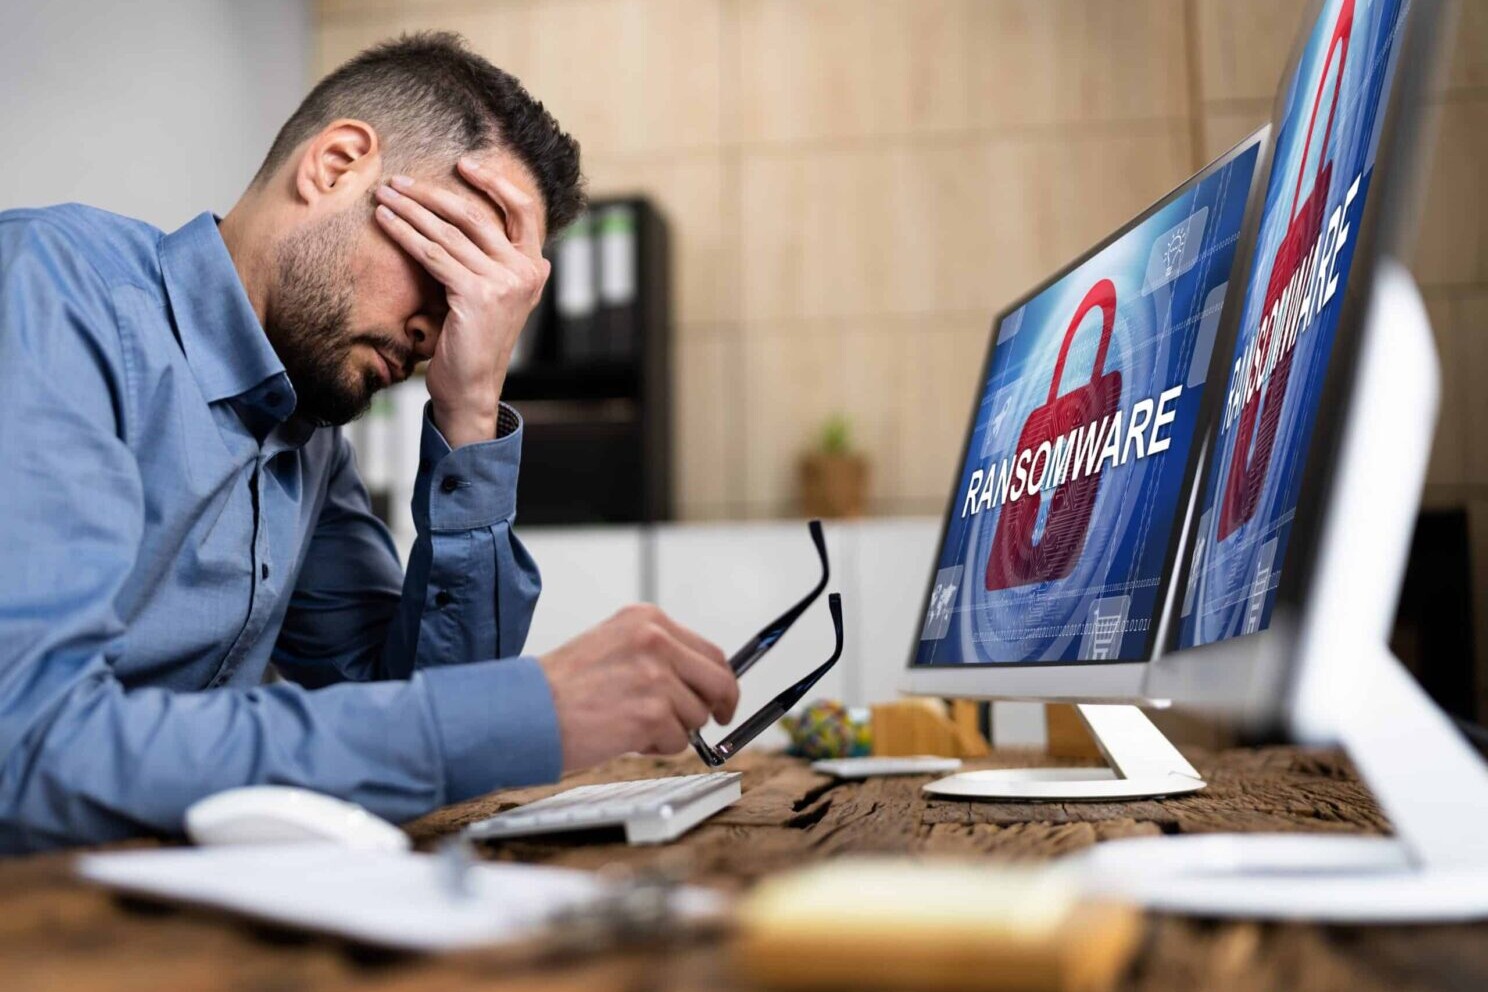 Ein Mann sitzt vor einem mit Ransomware infizierten Computerbildschirm.